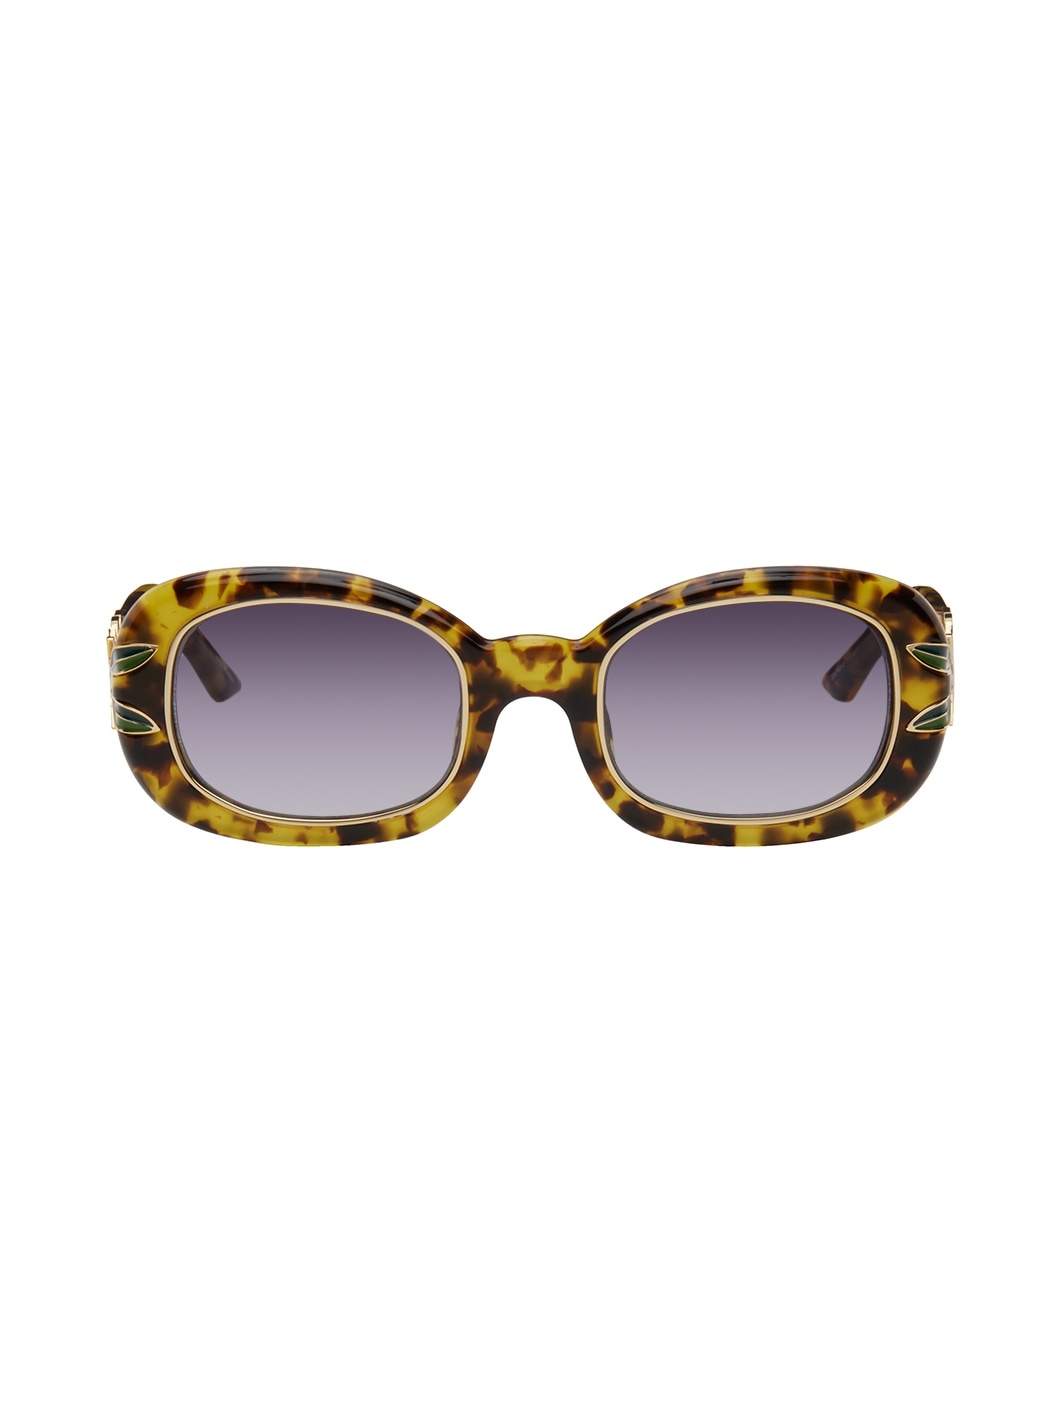 Brown Laurel Sunglasses - 1